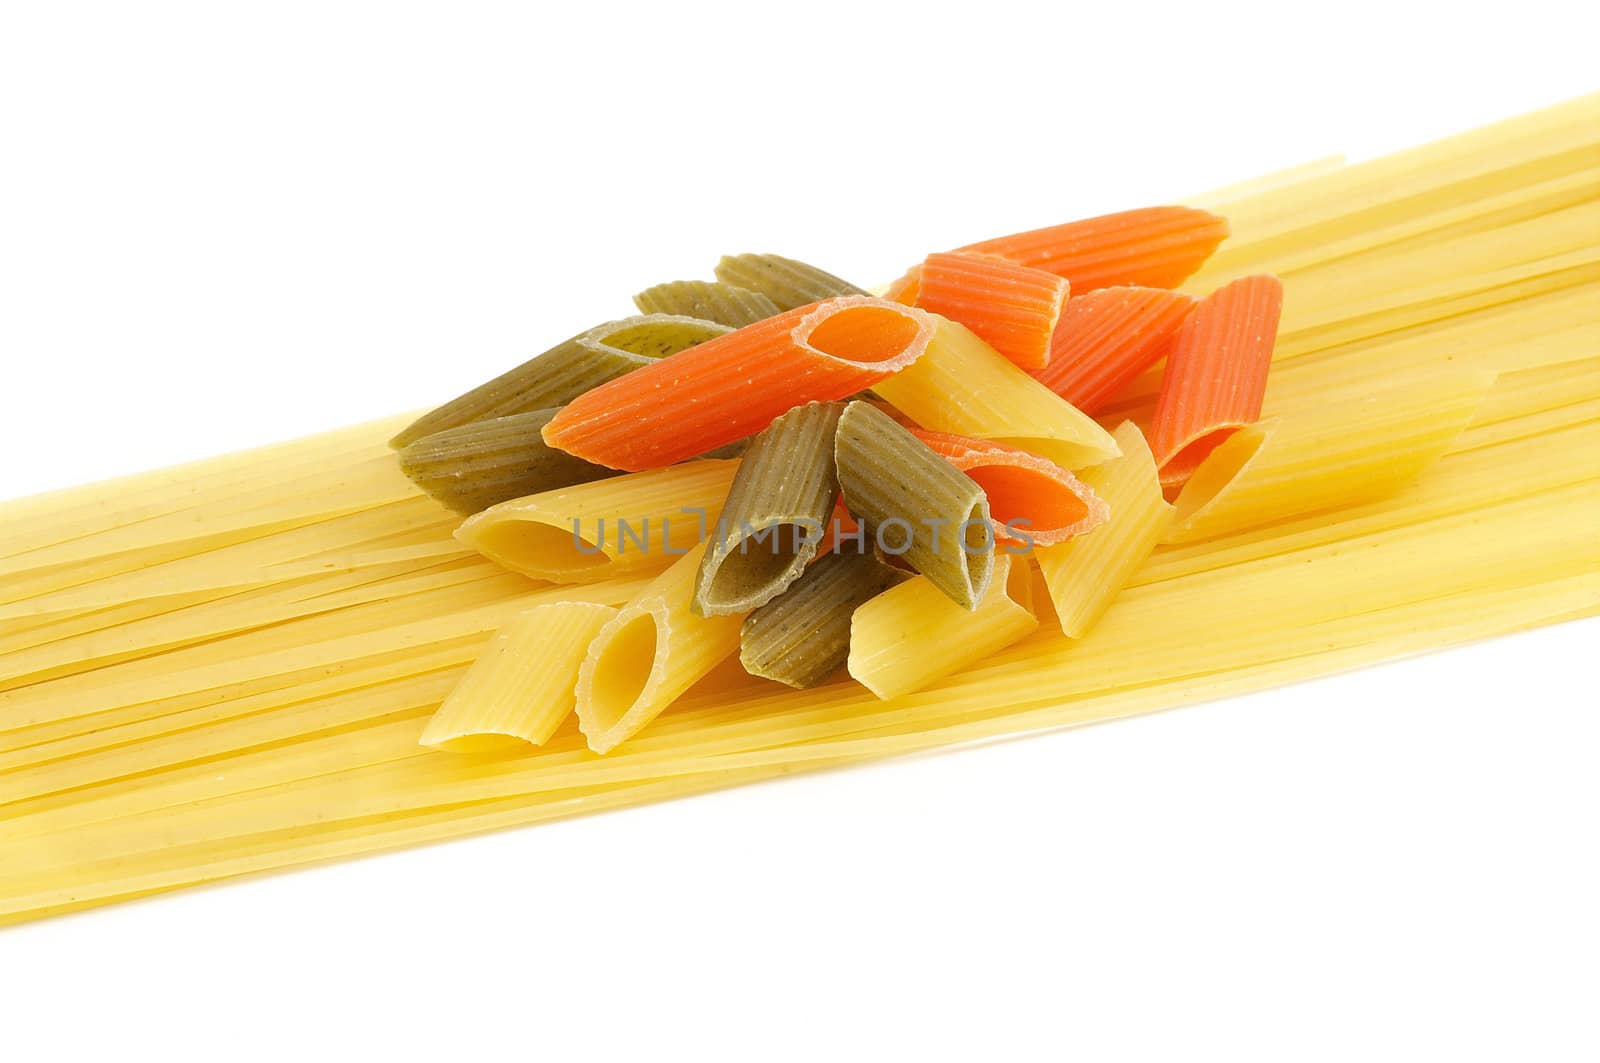 Italian pasta spaghetti and Penne rigate tricolore by zhekos